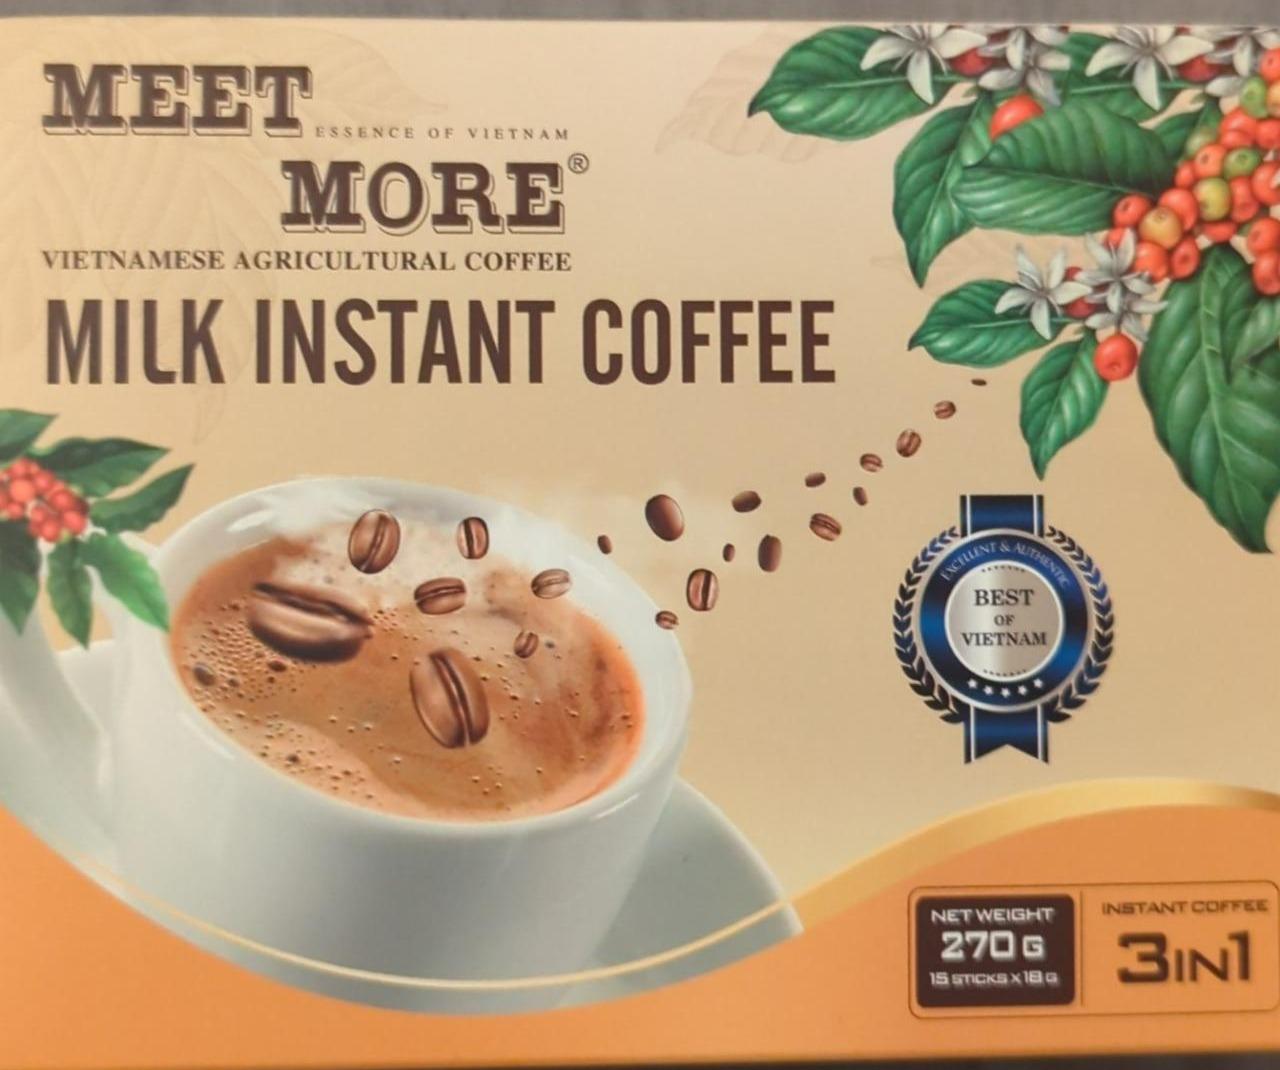 Fotografie - Milk instant coffee Meet more